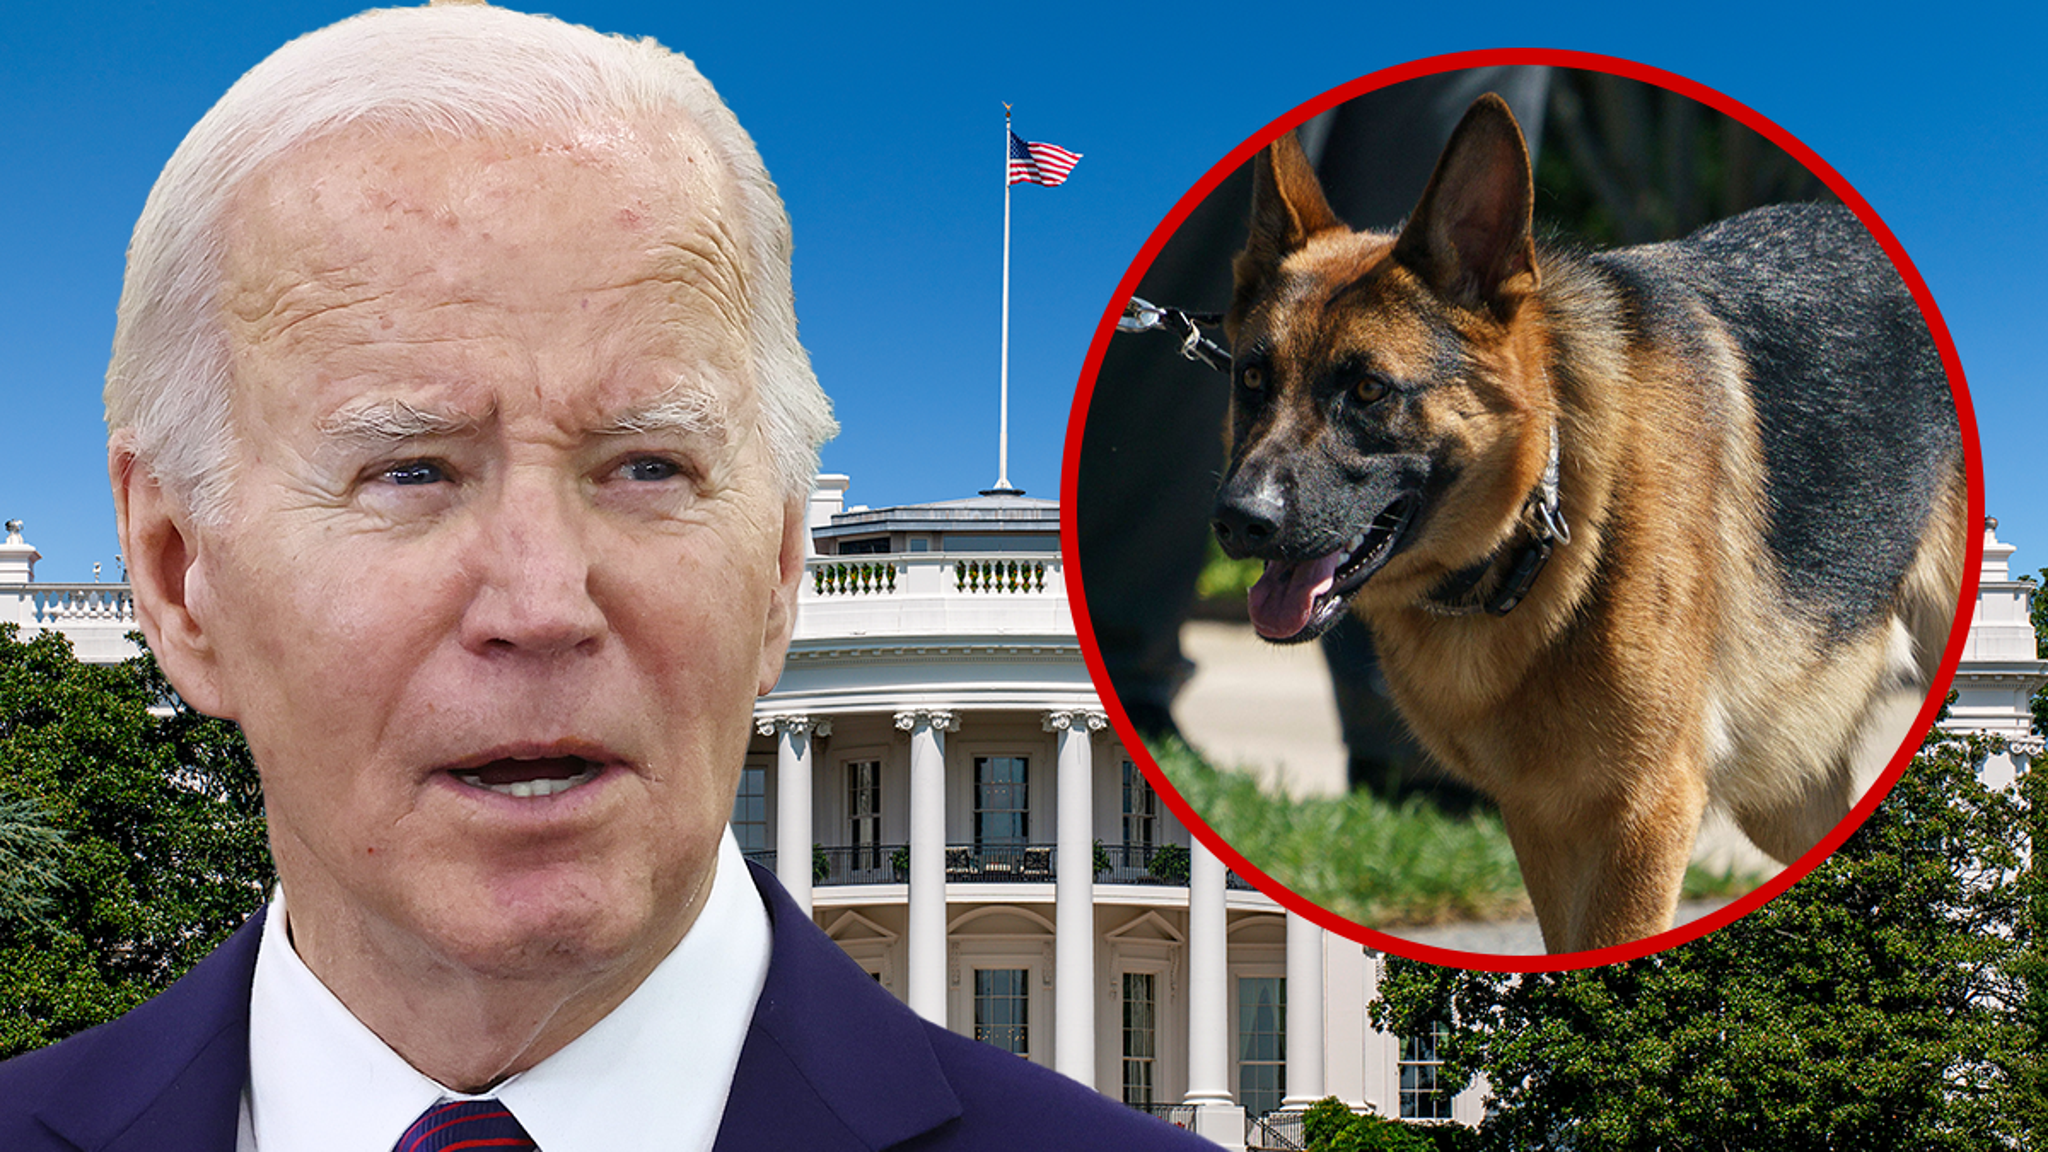 El perro al mando del presidente Biden mordió a agentes del Servicio Secreto 24 veces